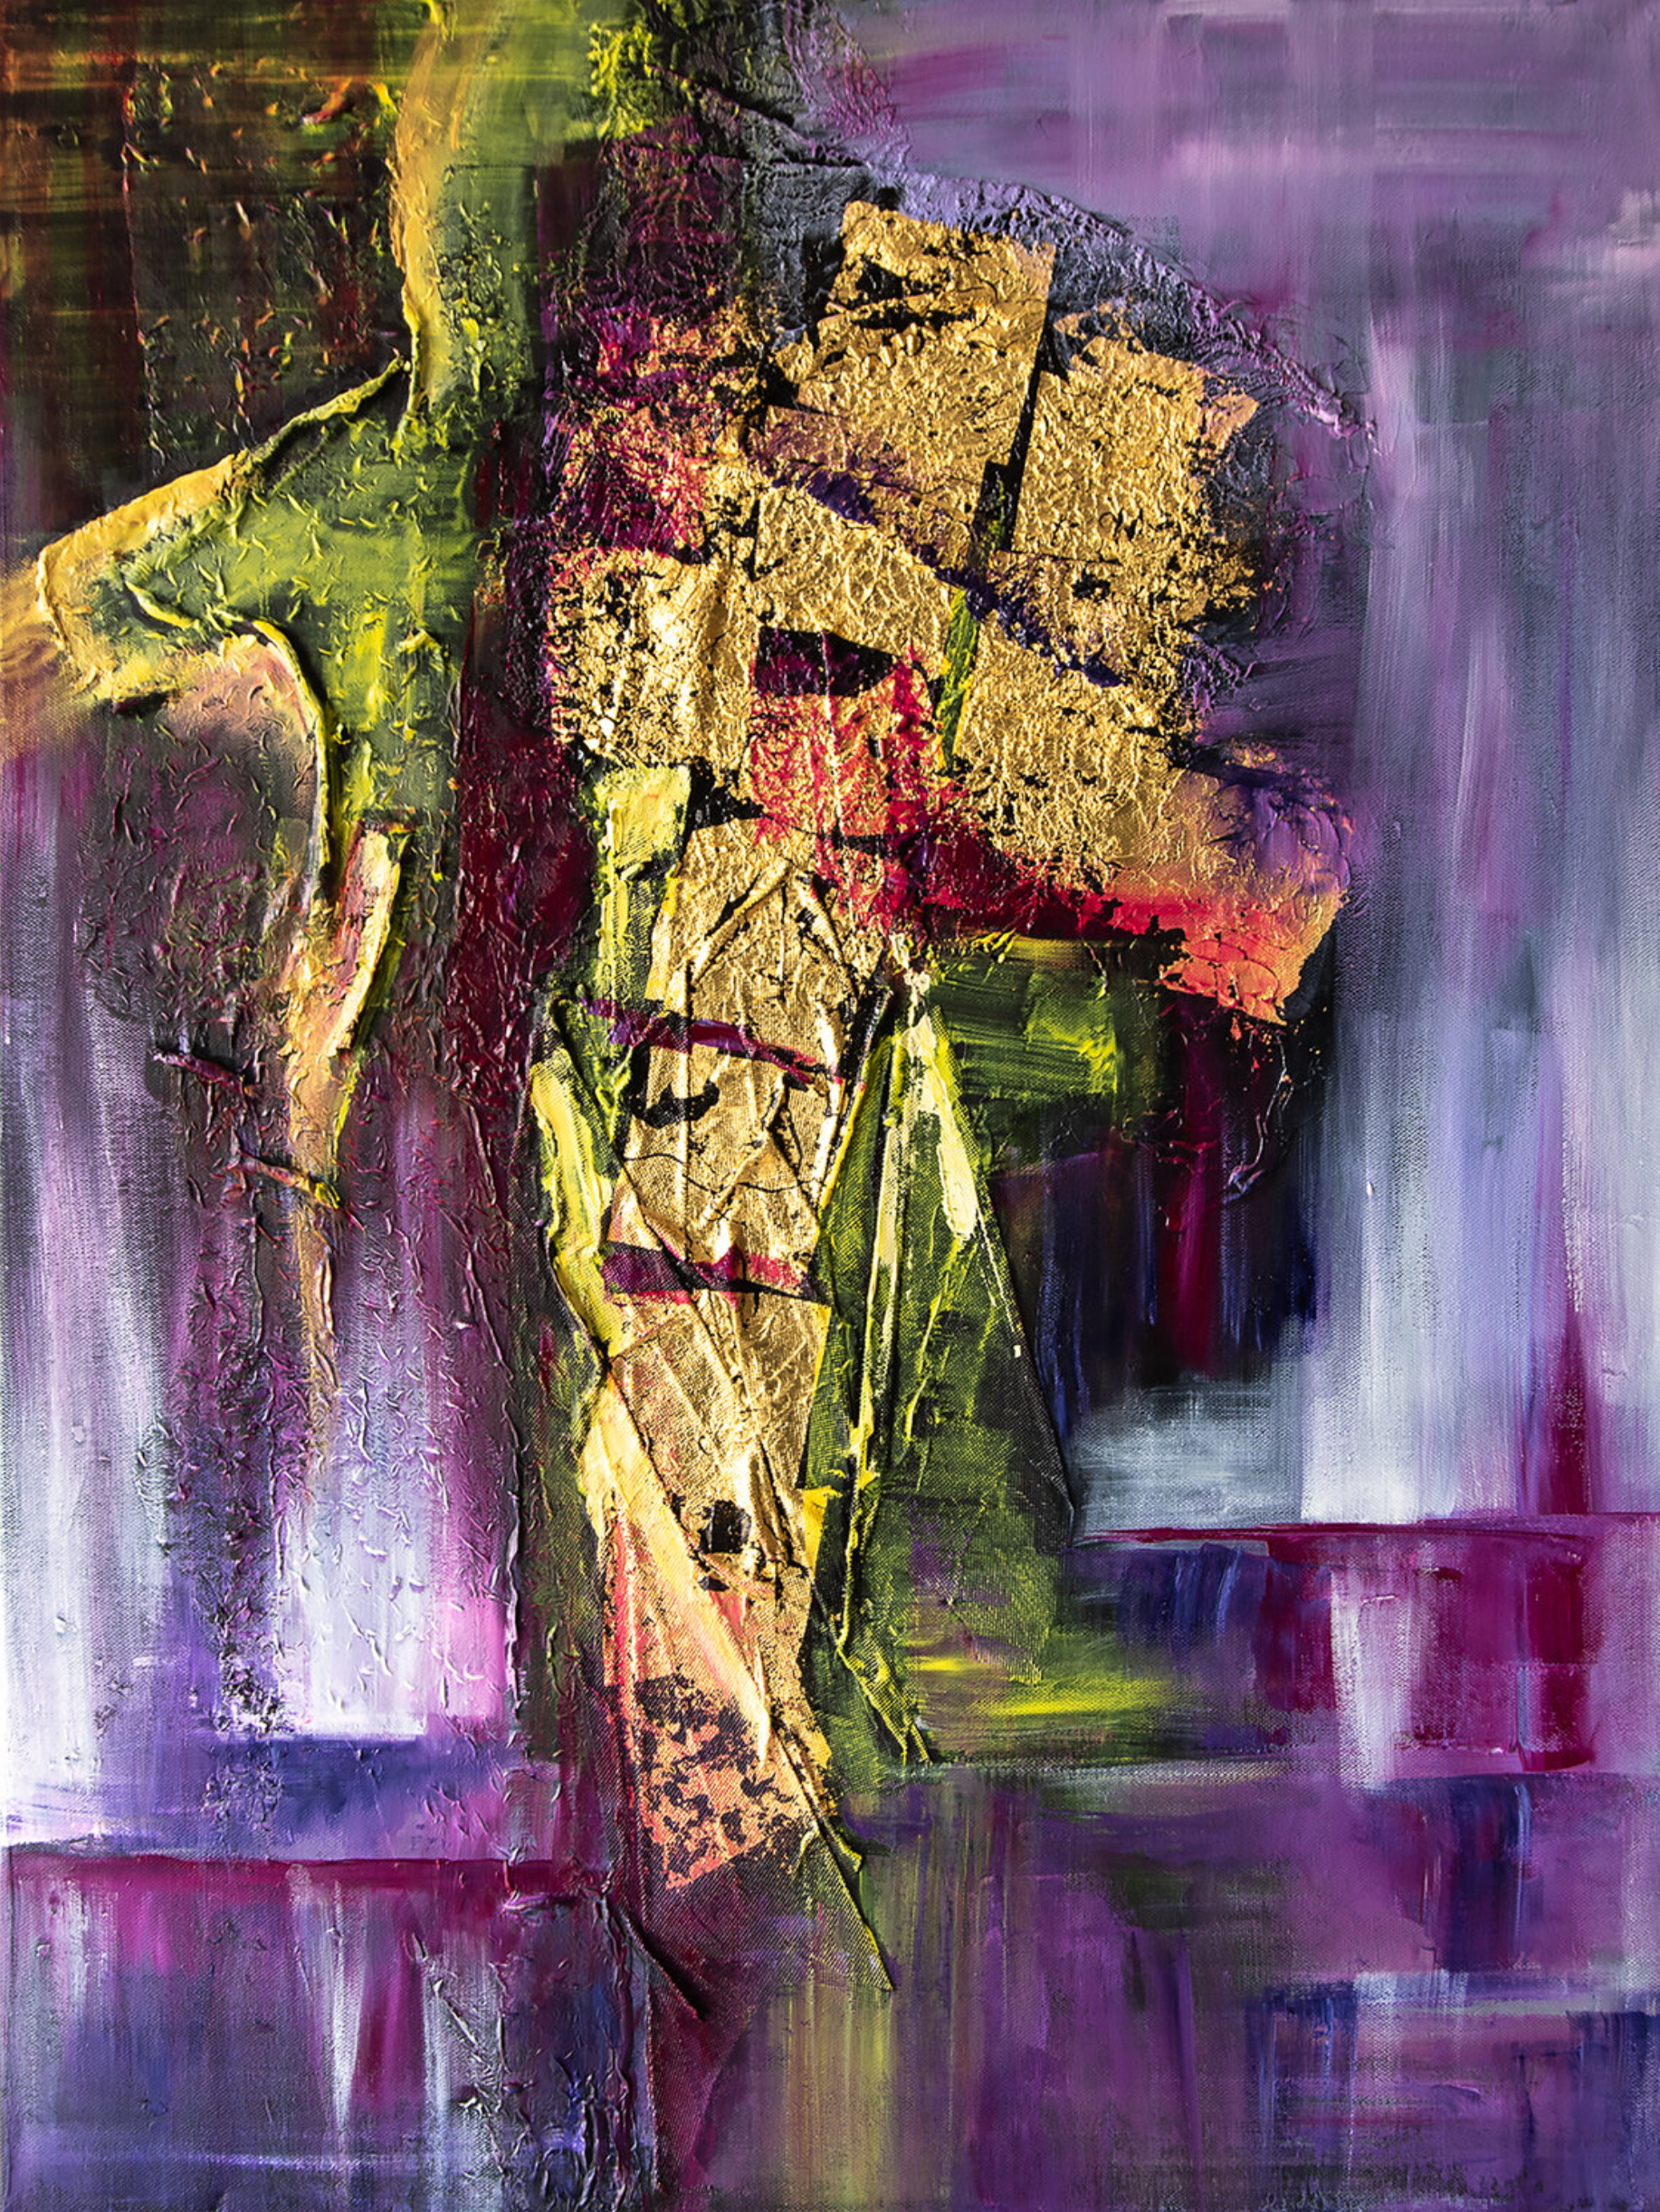 El cuadro abstracto "Spectral" de Françoise Dugourd-Caput muestra una abstracción lírica, en un colorido púrpura y verde que acompaña al dorado de las hojas pegadas sobre la mezcla Con imaginación podemos ver una silueta que emerge de detrás de un montón dorado, dando la impresión de llevar una pesada carga o de intentar escapar de ella